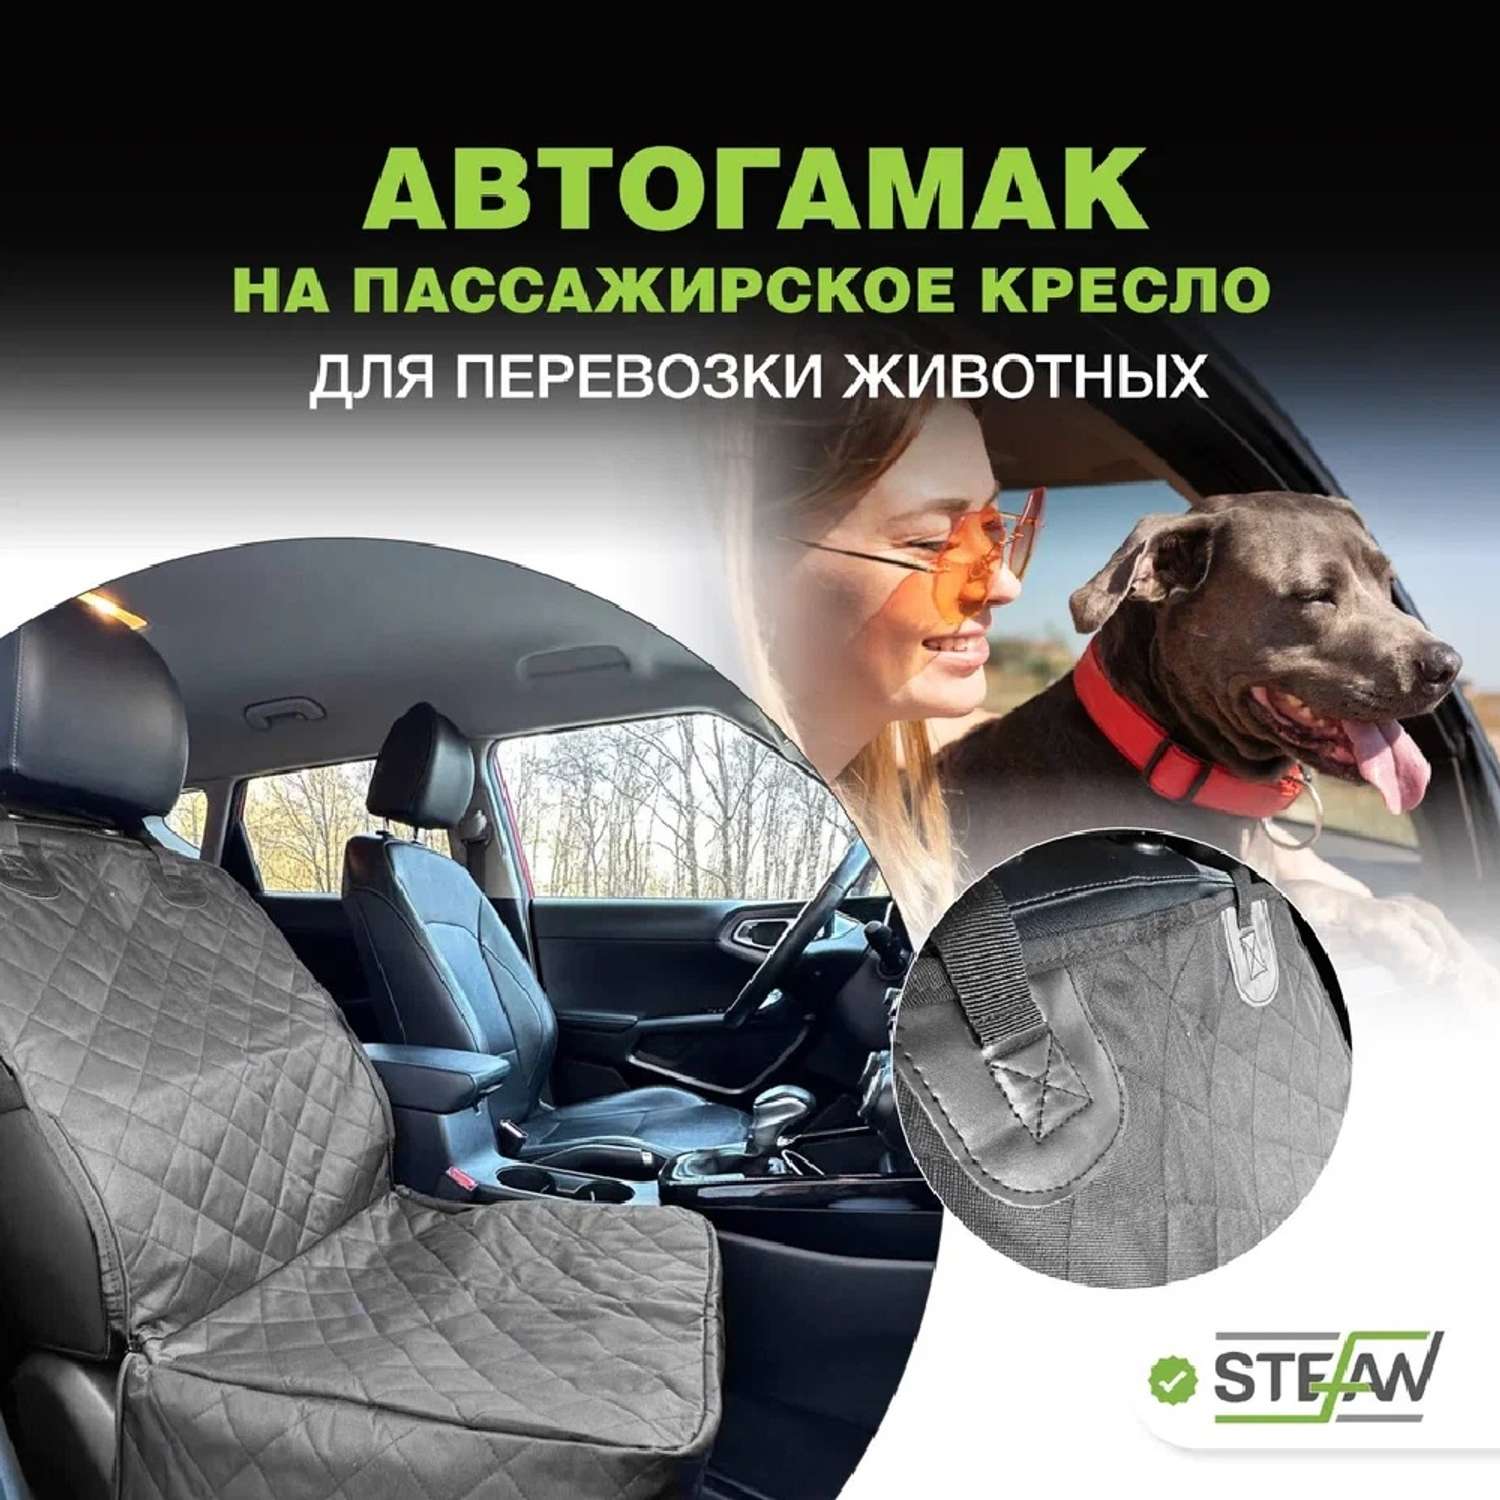 Автогамак для животных Stefan чехол на пассажирское кресло 100х50 см черный - фото 1